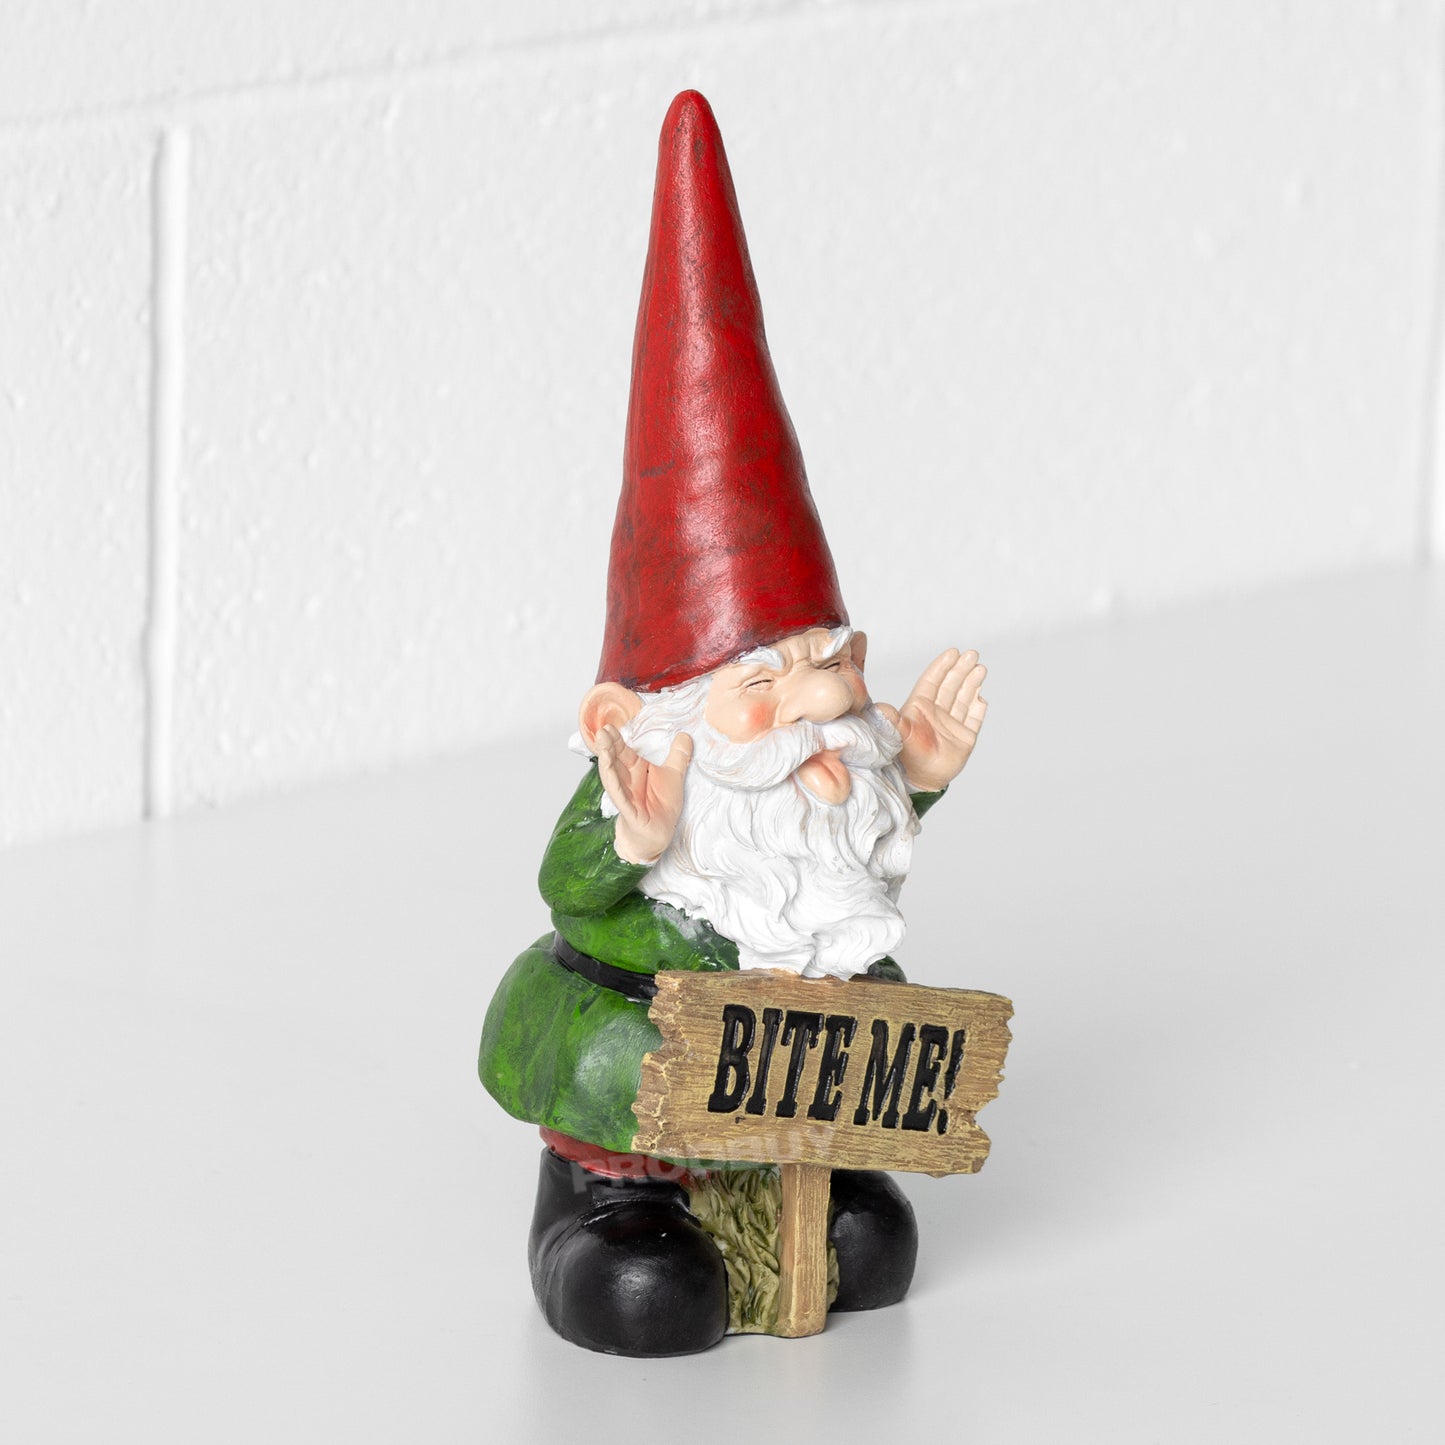 Small 'Bite Me!' Garden Gnome Ornament